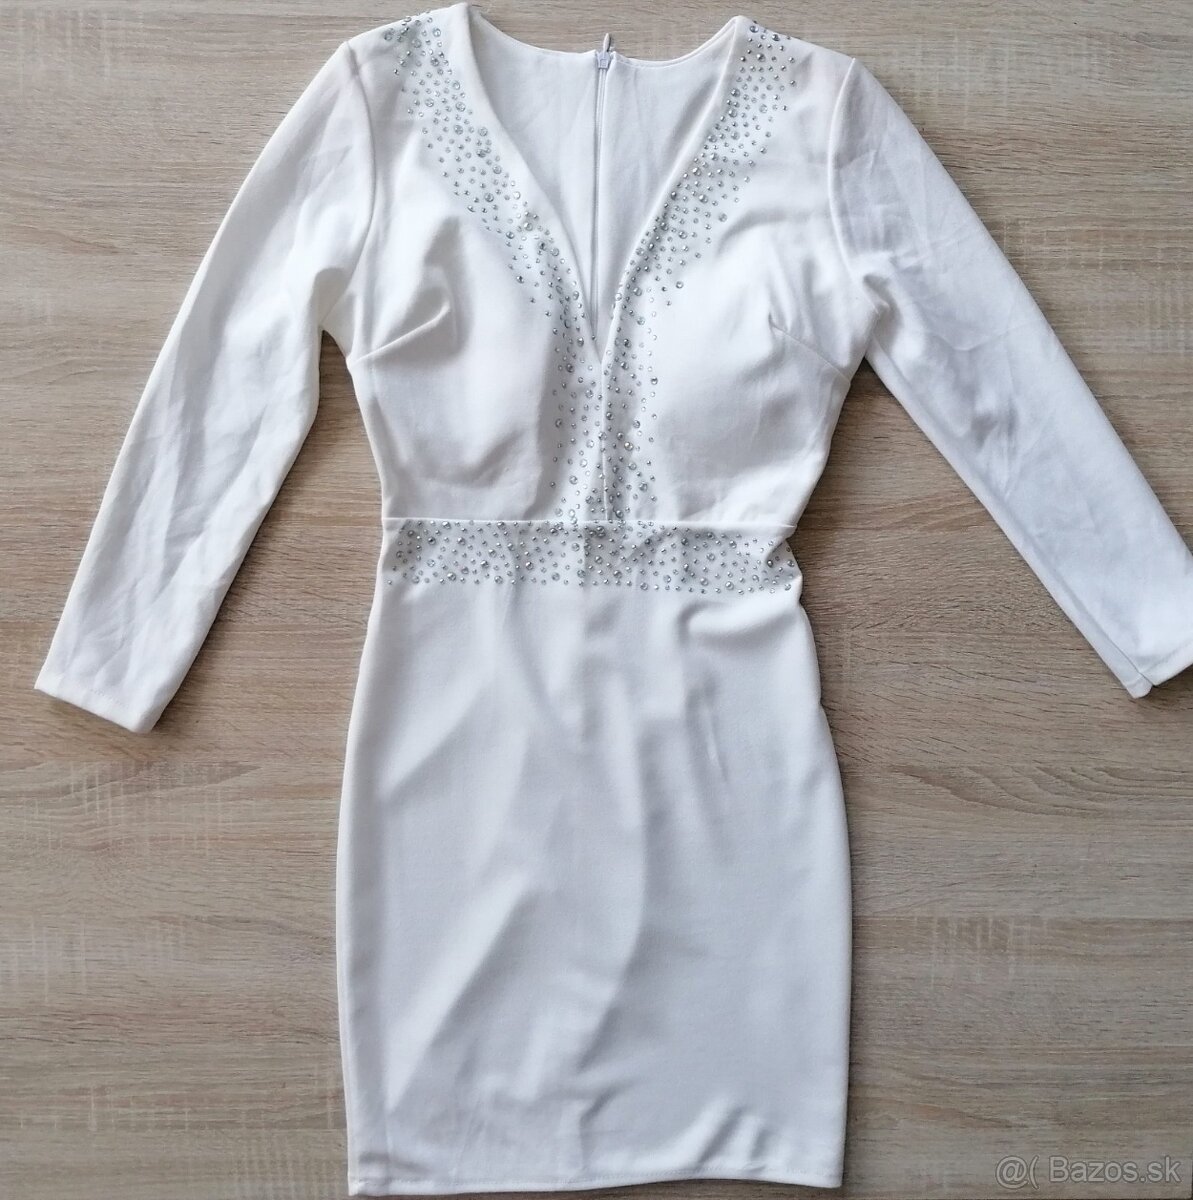 Spoločenské dámske biele šaty, veľkosť S/M